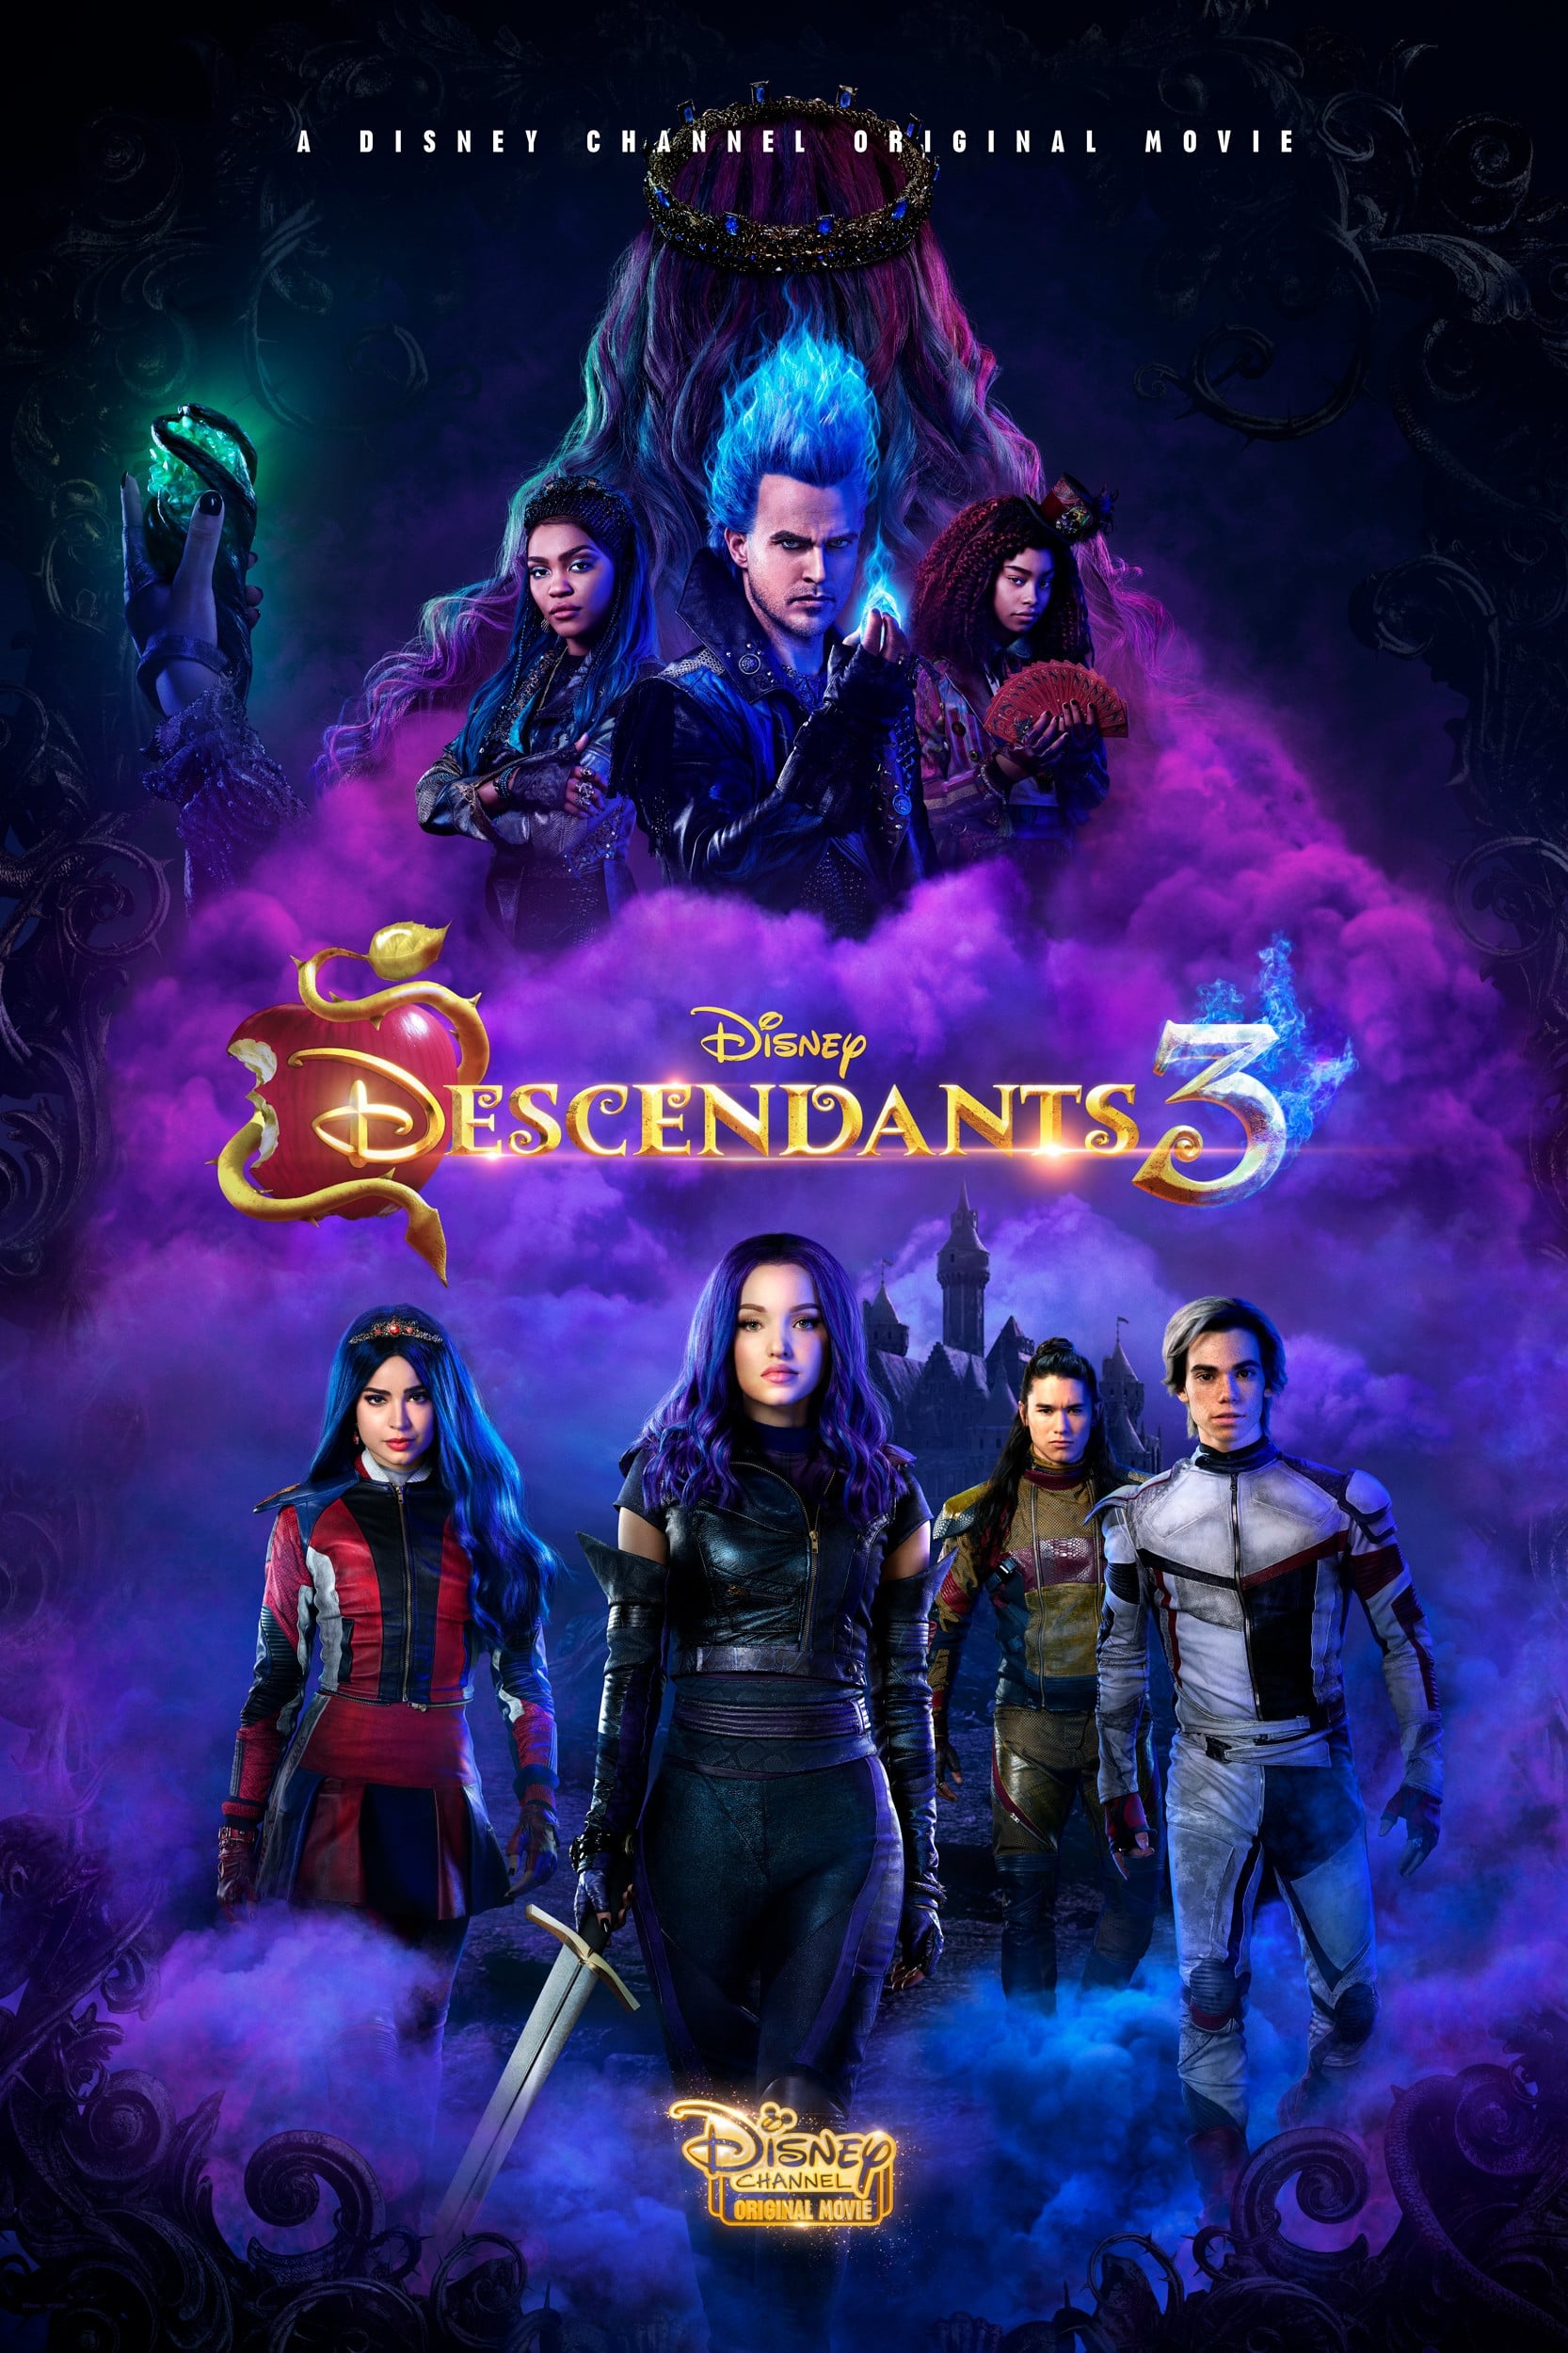 ดูหนังออนไลน์ฟรี Descendants 3 (2019) รวมพลทายาทตัวร้าย 3